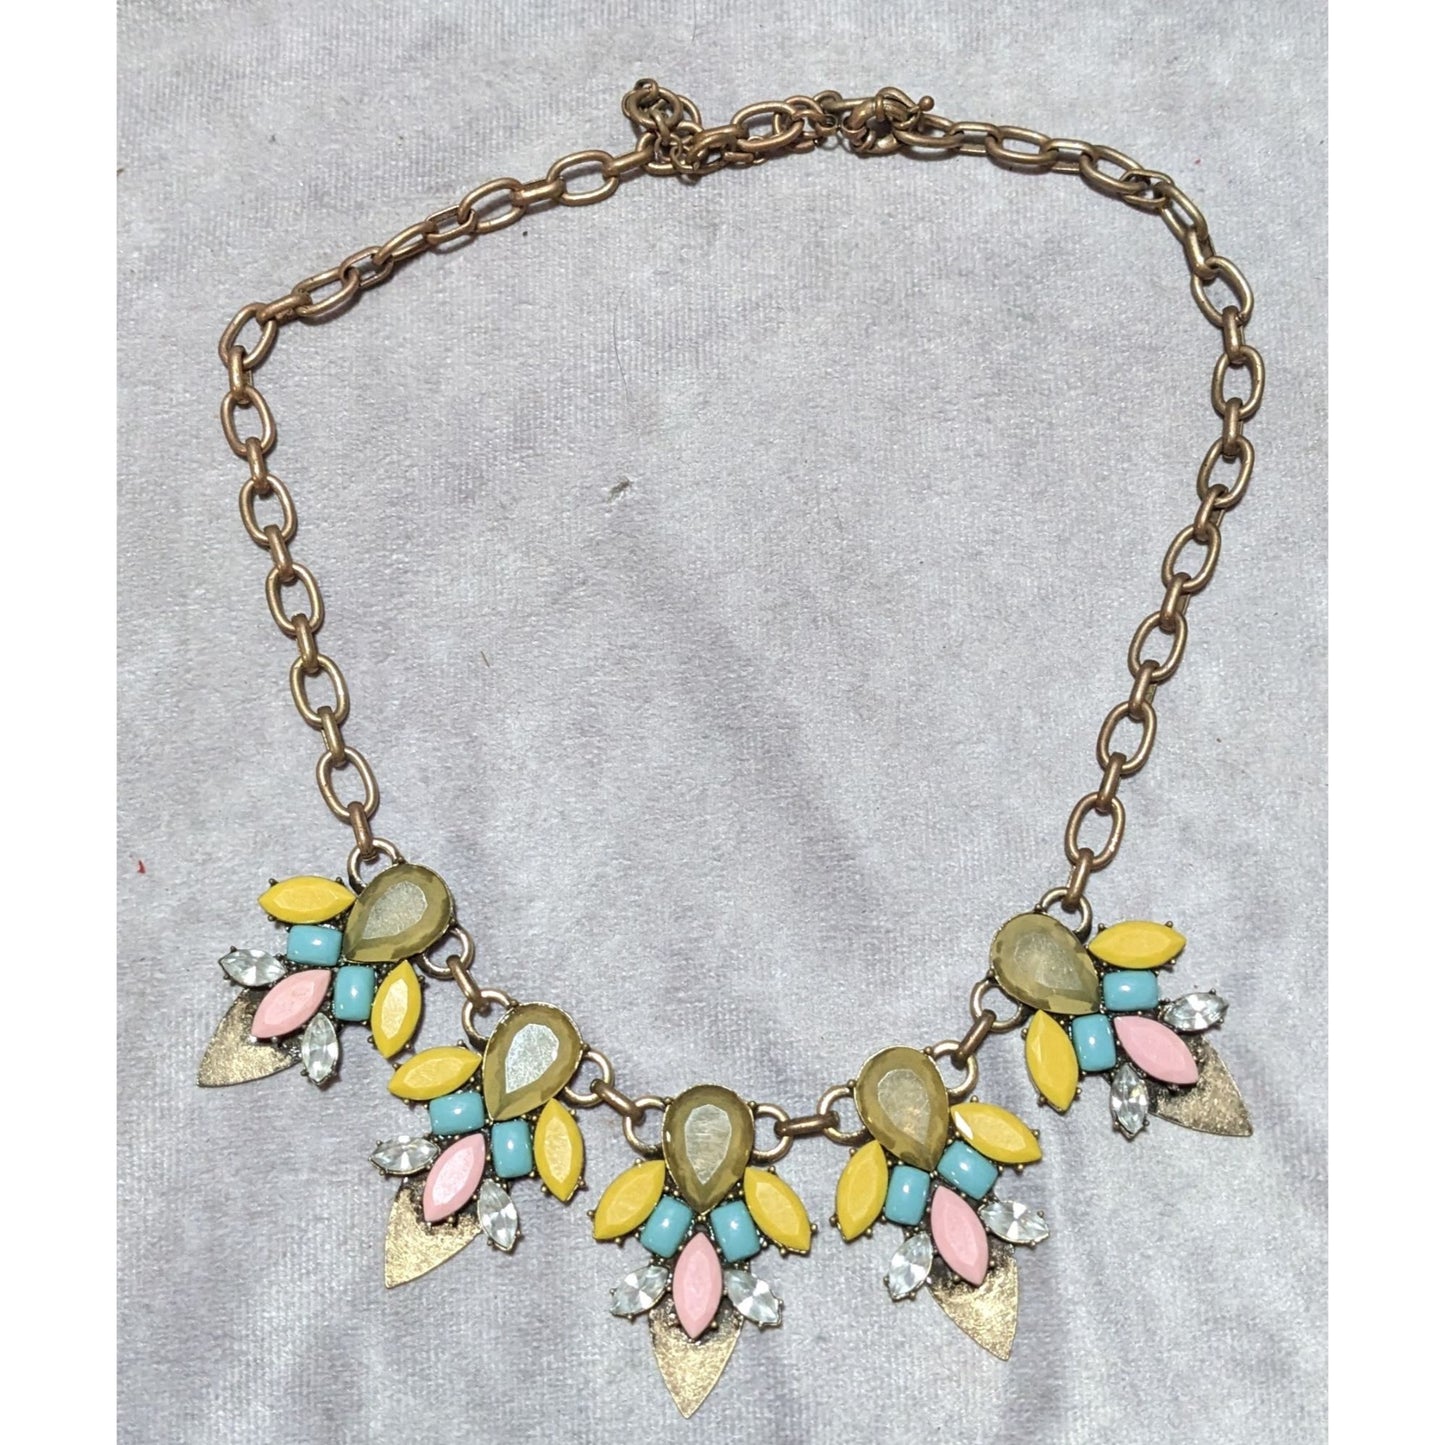 90s Glam Floral Gemmed Necklace